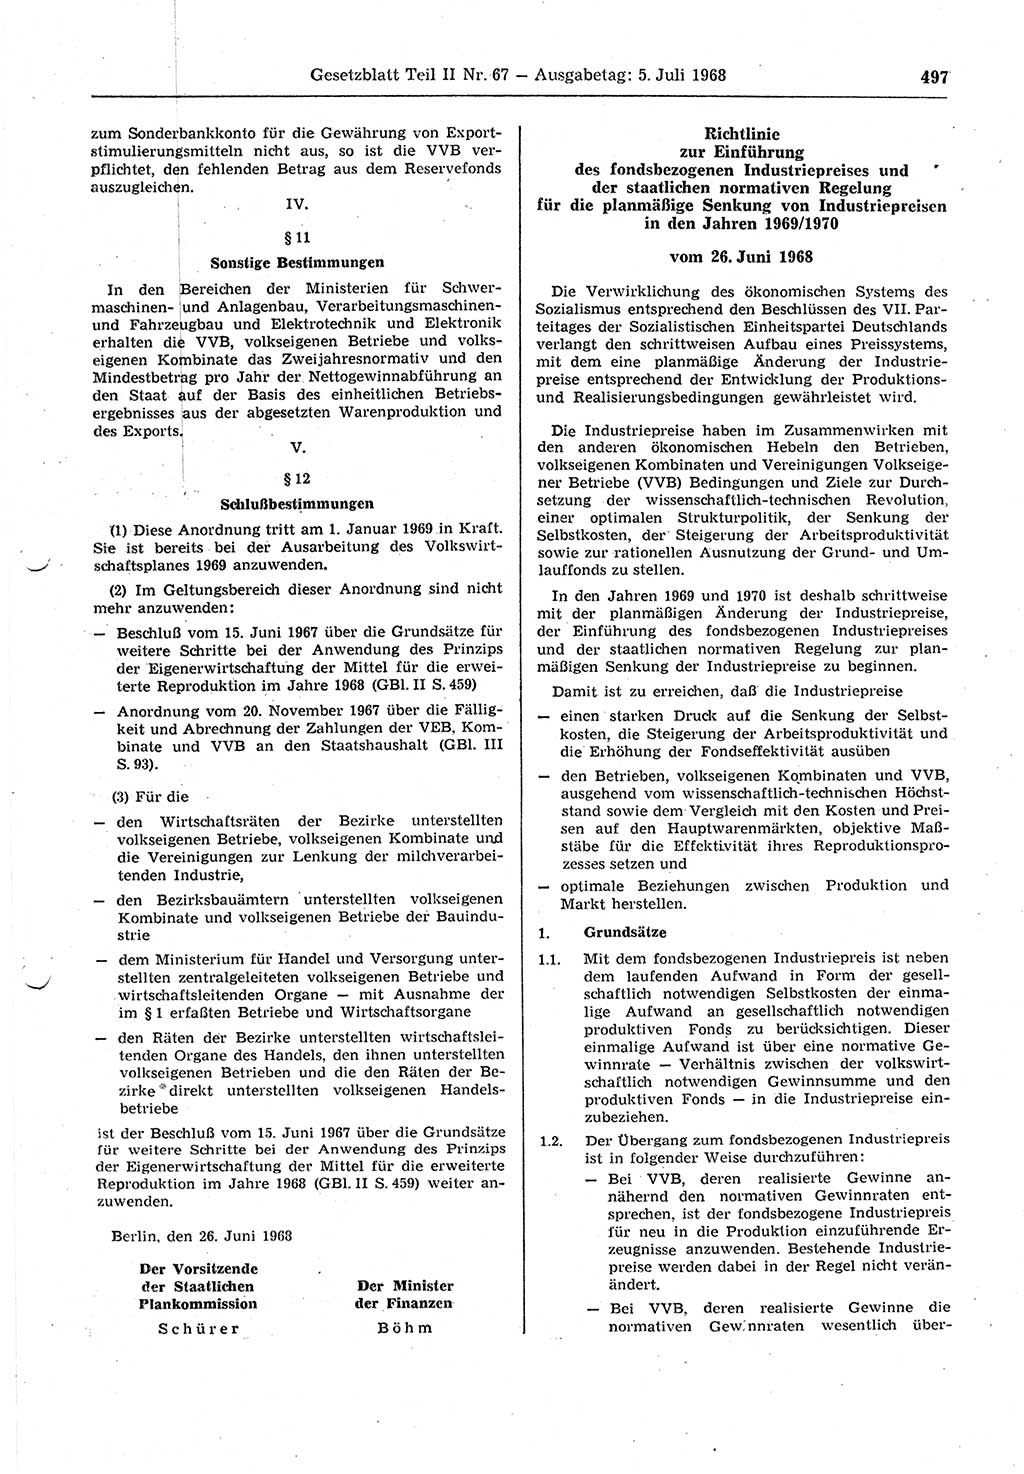 Gesetzblatt (GBl.) der Deutschen Demokratischen Republik (DDR) Teil ⅠⅠ 1968, Seite 497 (GBl. DDR ⅠⅠ 1968, S. 497)